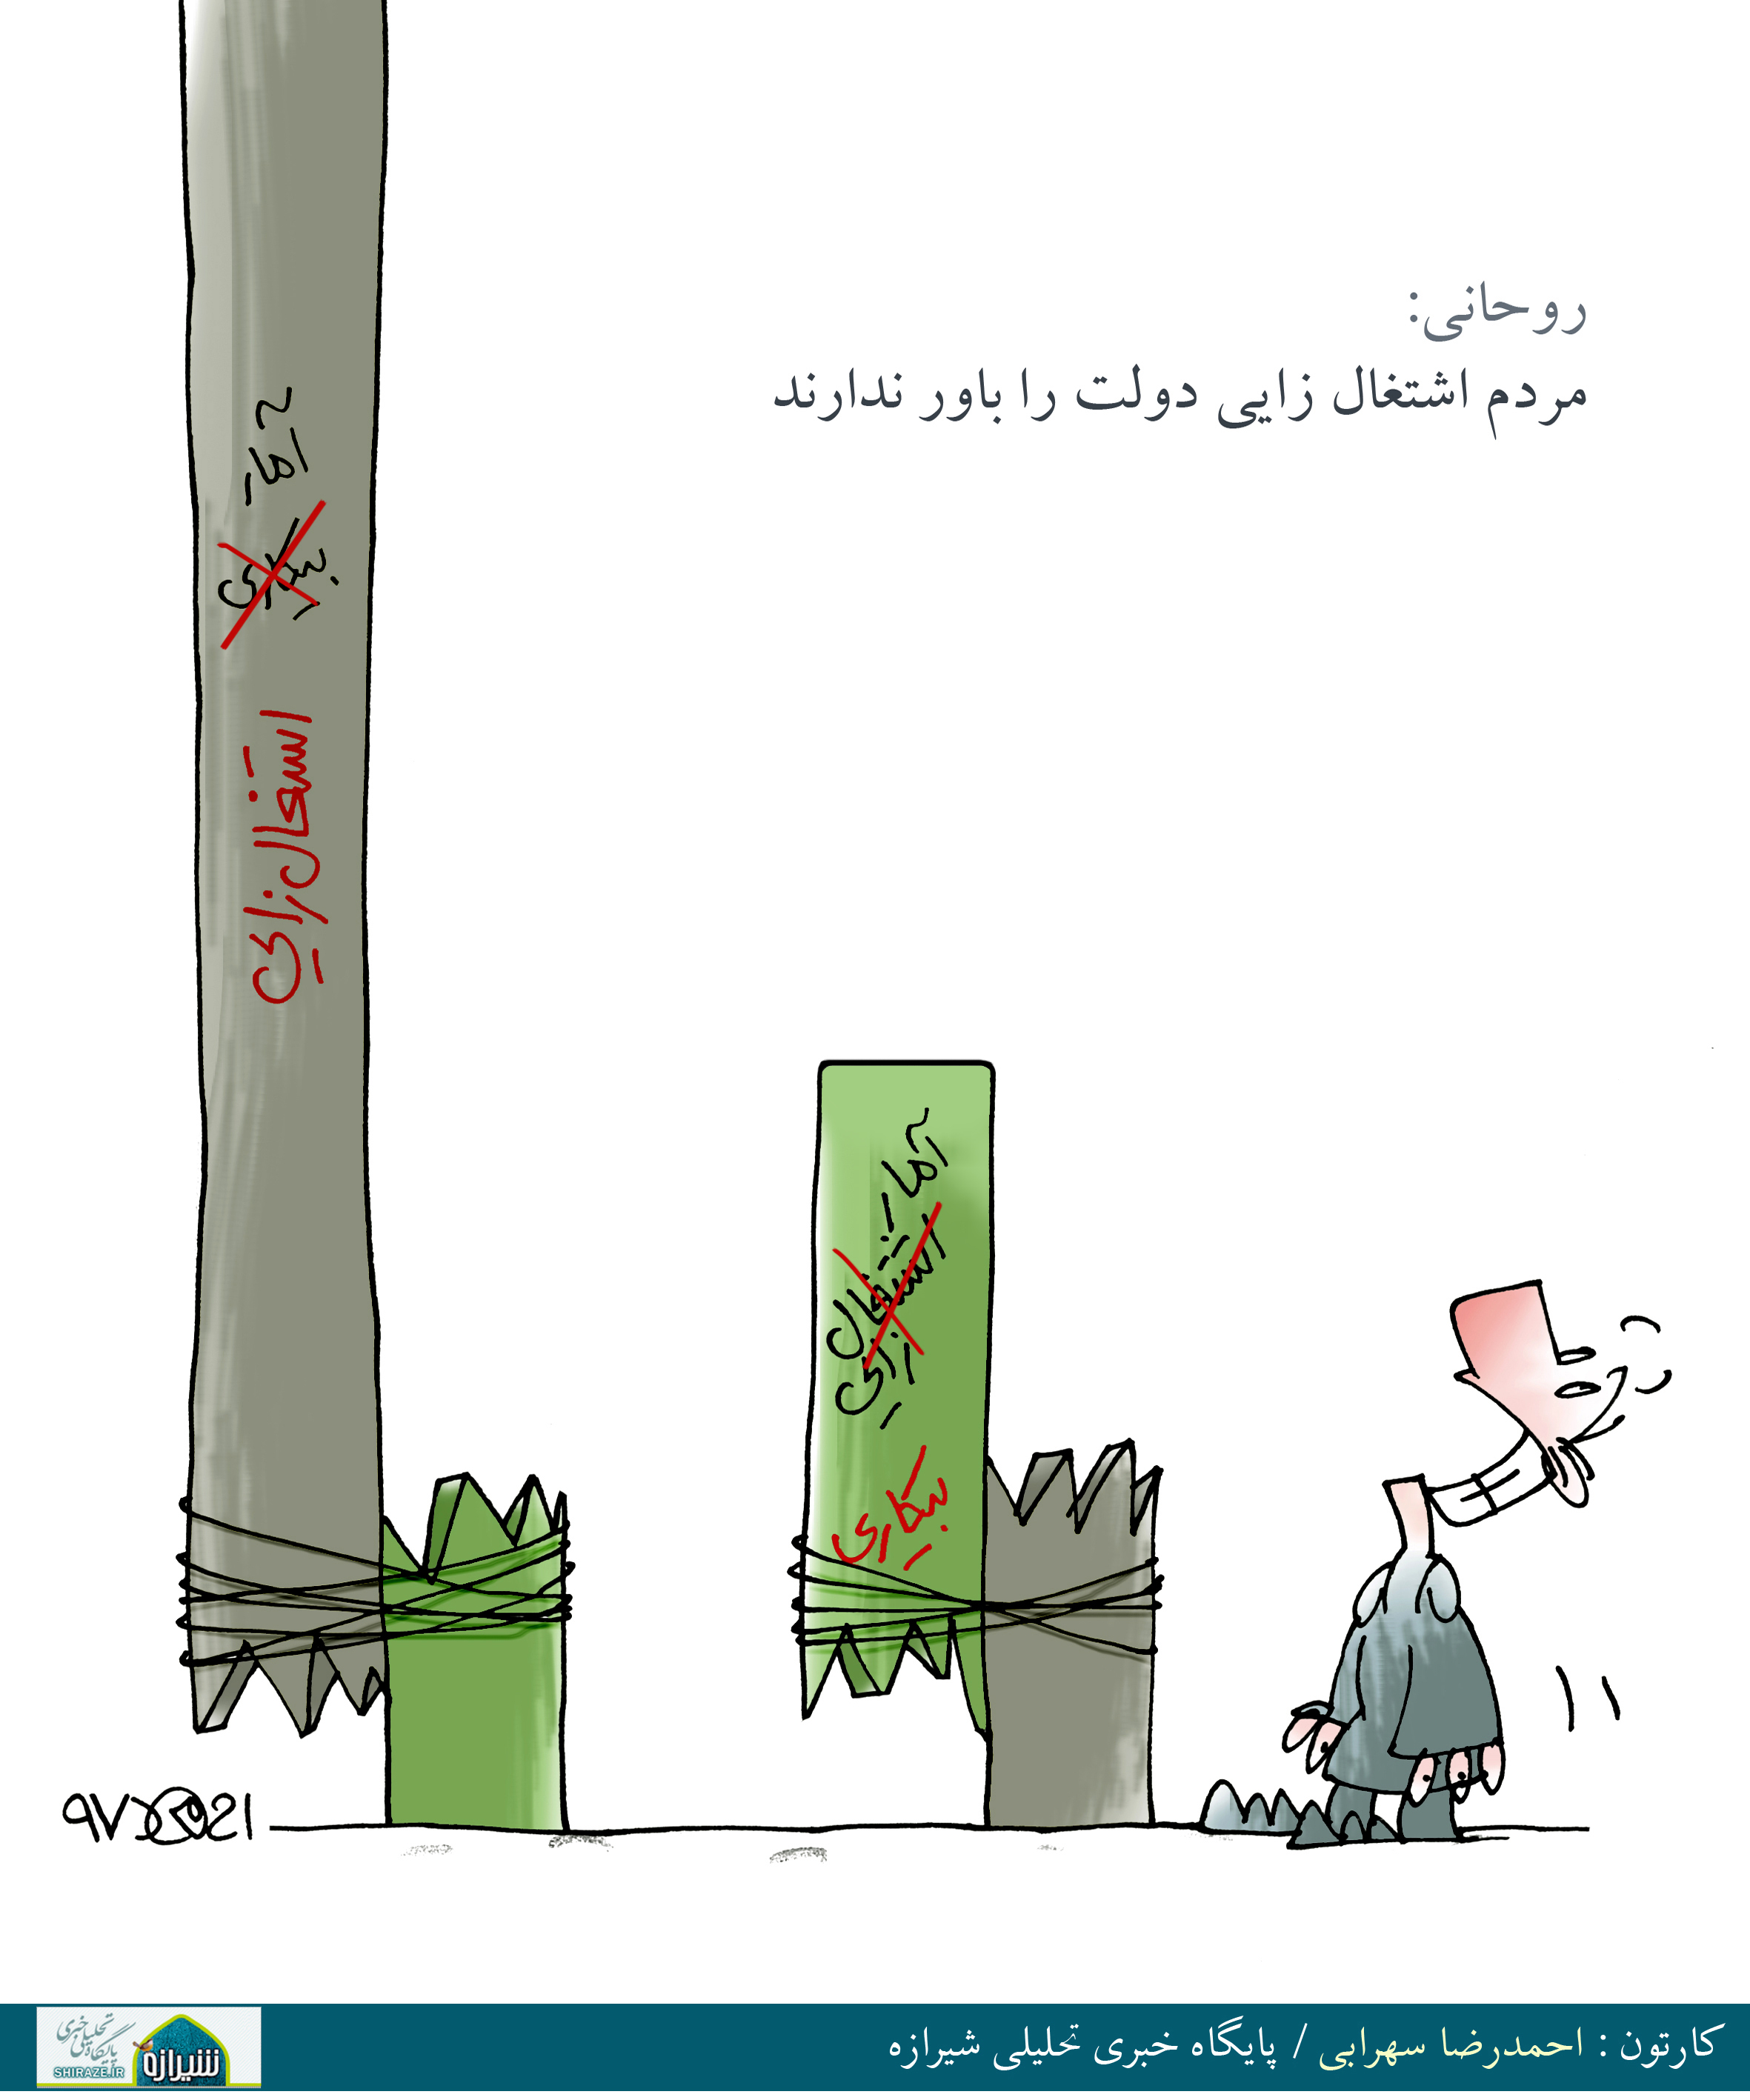 کاریکاتور شیرازه؛ روحانی مردم اشتغالزایی دولت را باور ندارند